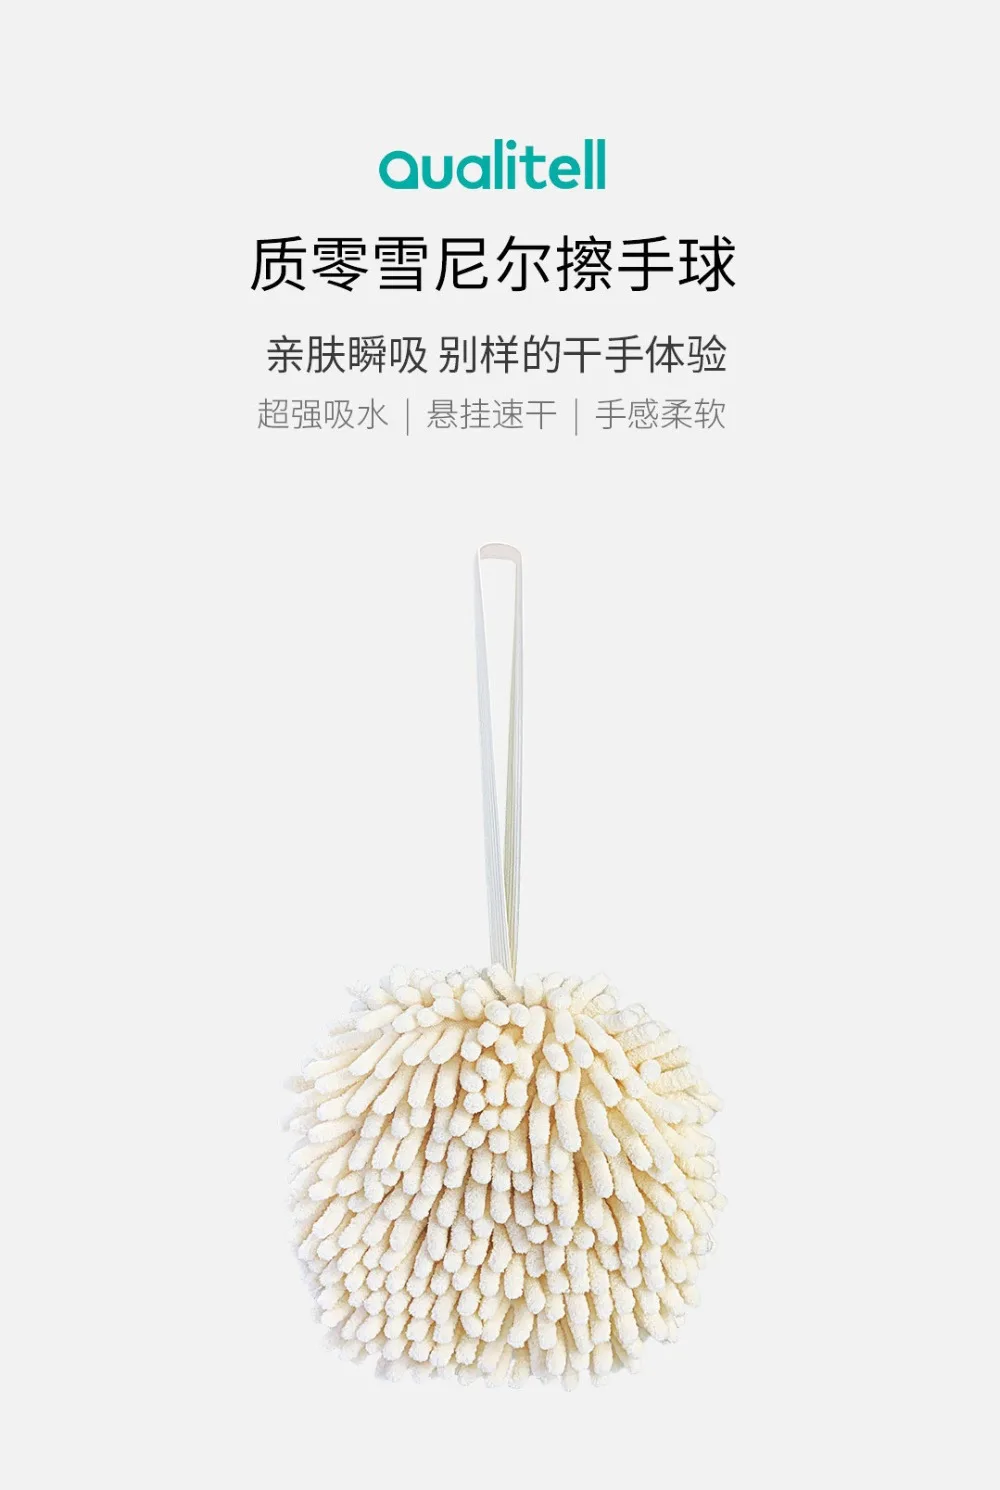 Xiaomi Youpin протирать полотенца для рук мяч супер абсорбент быстро сохнет мягкий на ощупь предотвратить рост бактерий здоровье для ребенка